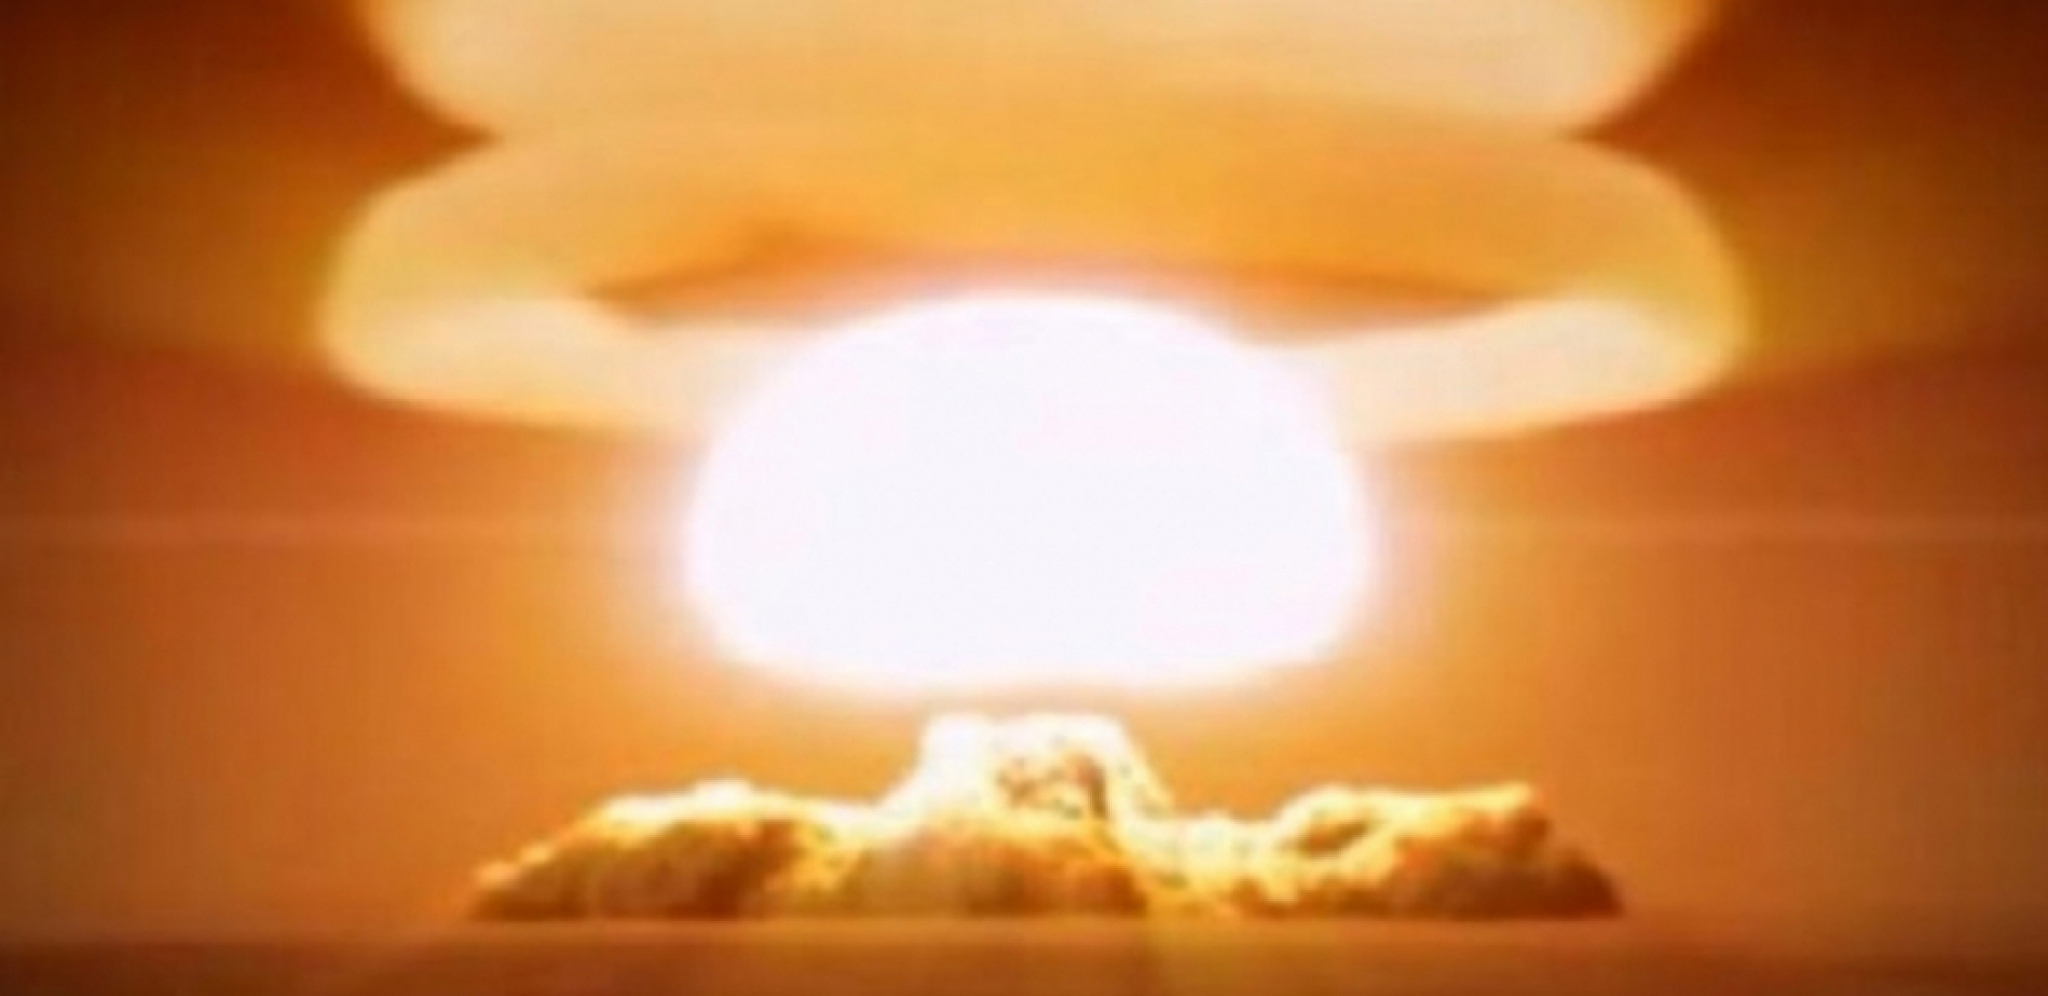 "AMERIKA ŽELI DA NAS ETNIČKI OČISTI" Nacija na koju je bačeno najviše nuklearnih bombi